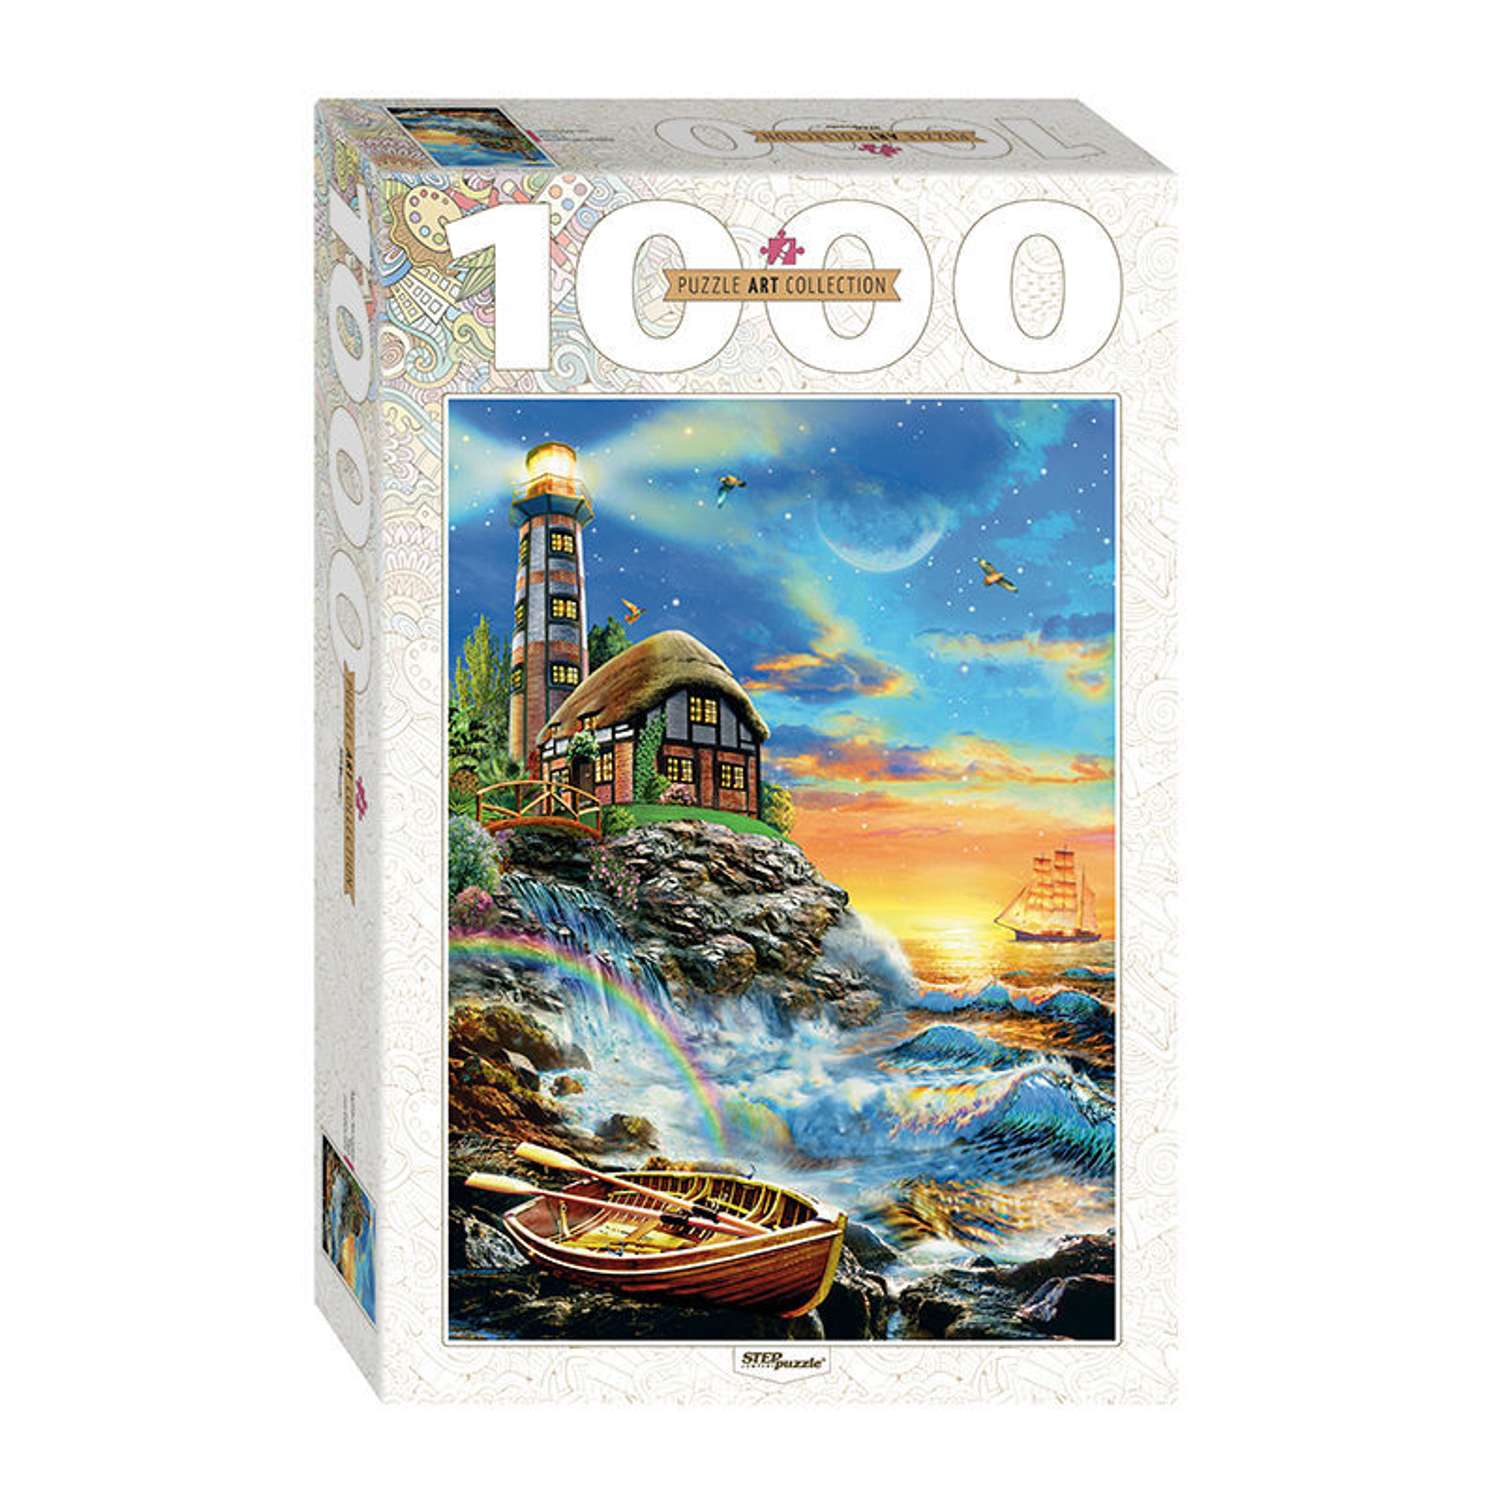 Пазл Step Puzzle Art Collection 1000 элементов в ассортименте 79109-79122 - фото 2